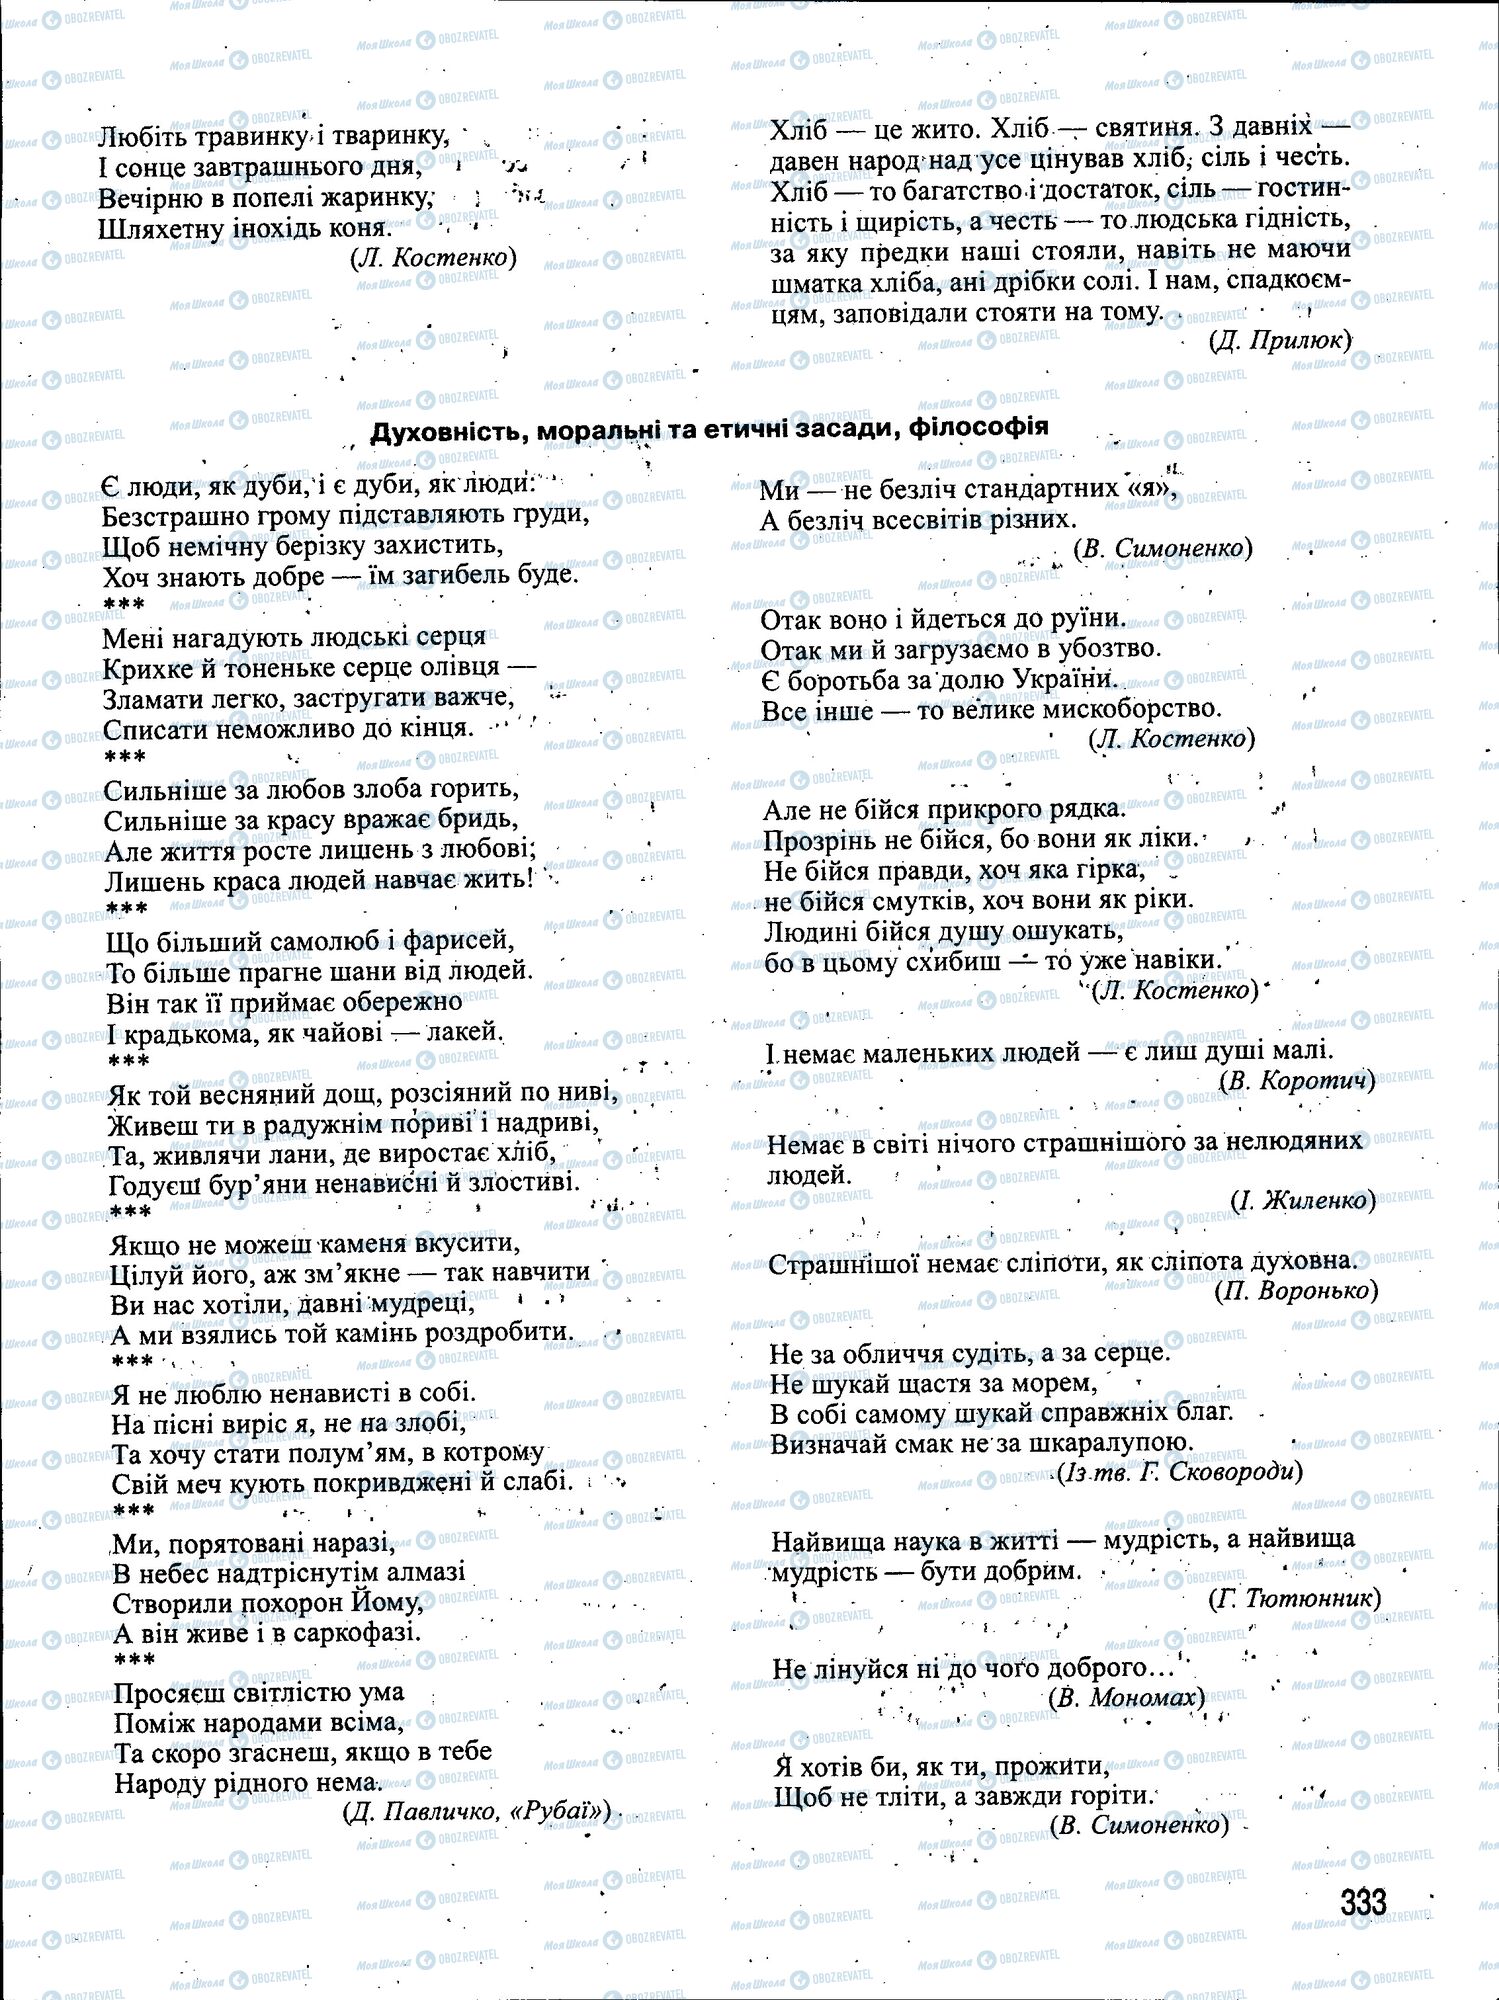 ЗНО Укр мова 11 класс страница 333